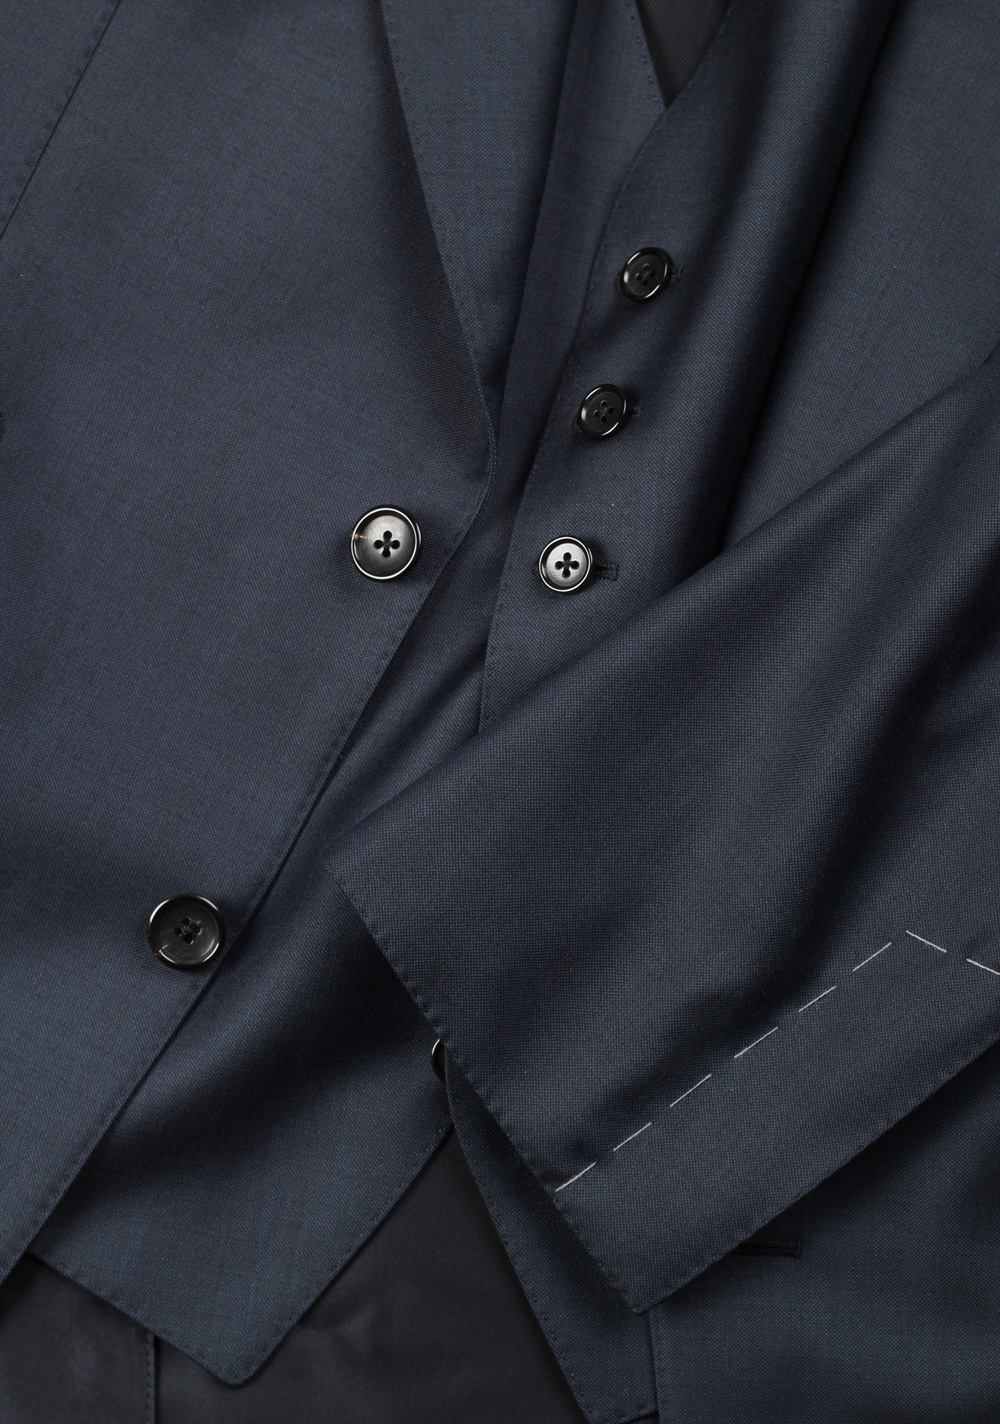 TOM FORD Windsor Blue 3 Piece Suit | Costume Limité